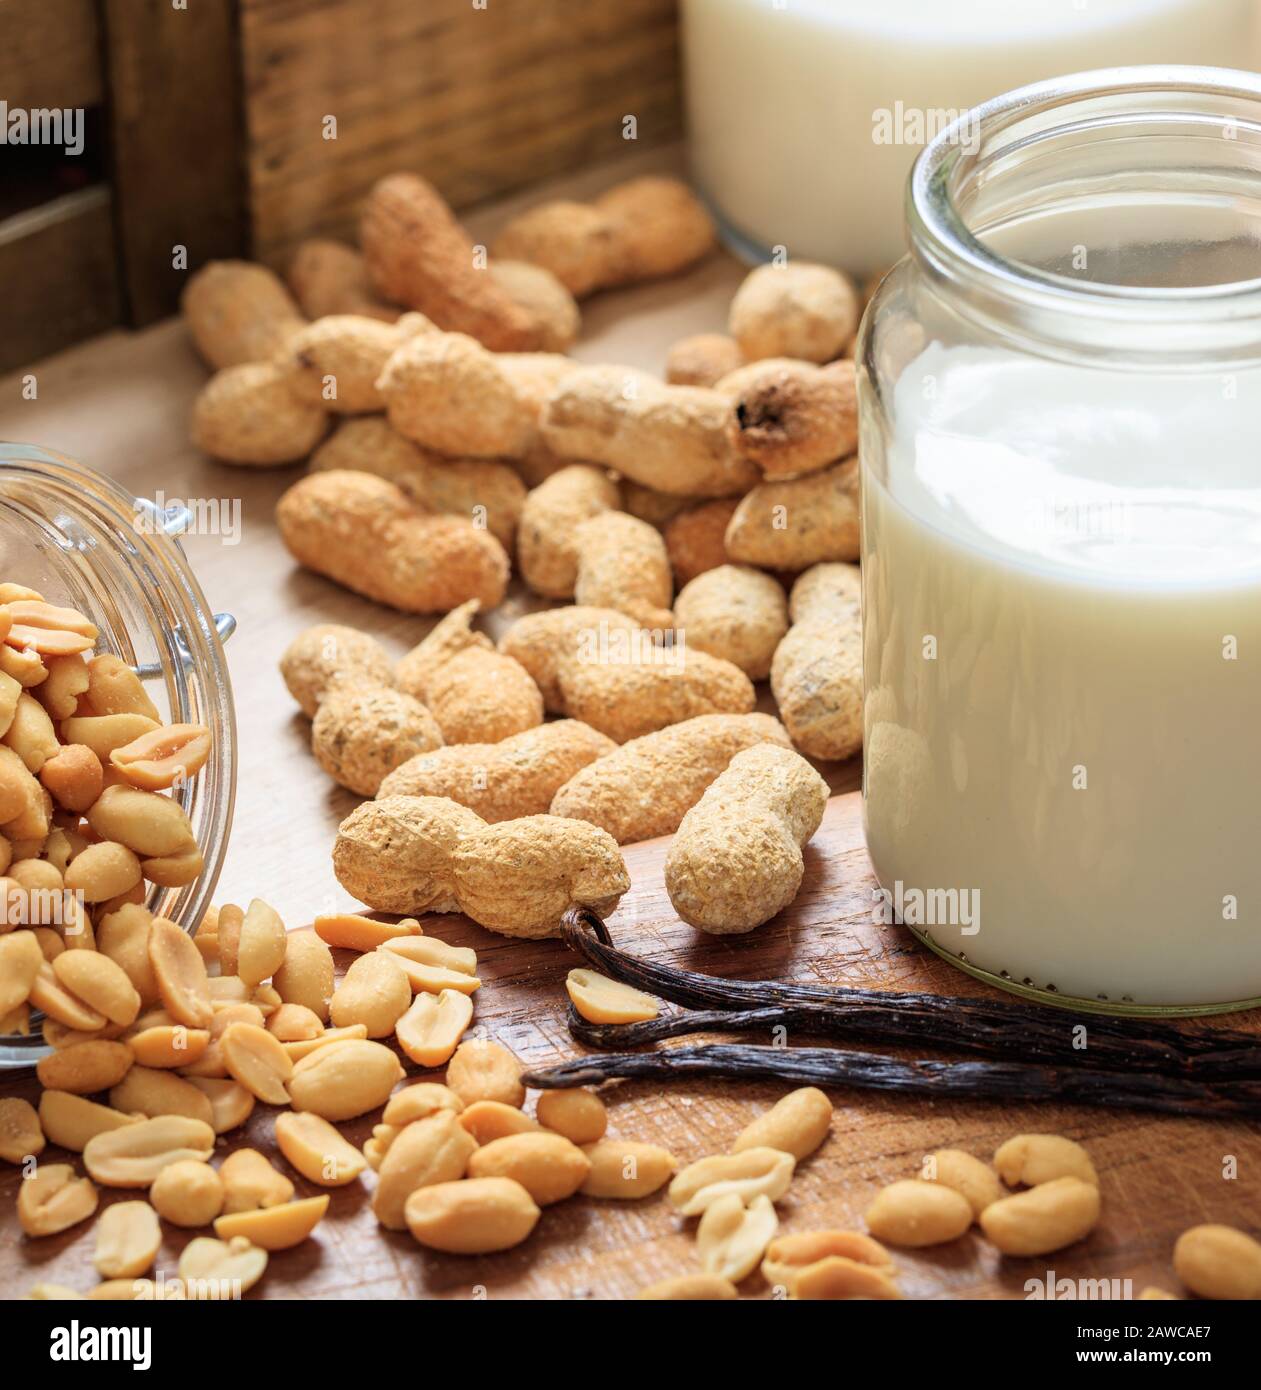 Latte di arachidi non latte di sostituzione latte su un tavolo di legno. Frutta a guscio e vetro con latte, latte senza lattosio sostituto per vegani Foto Stock